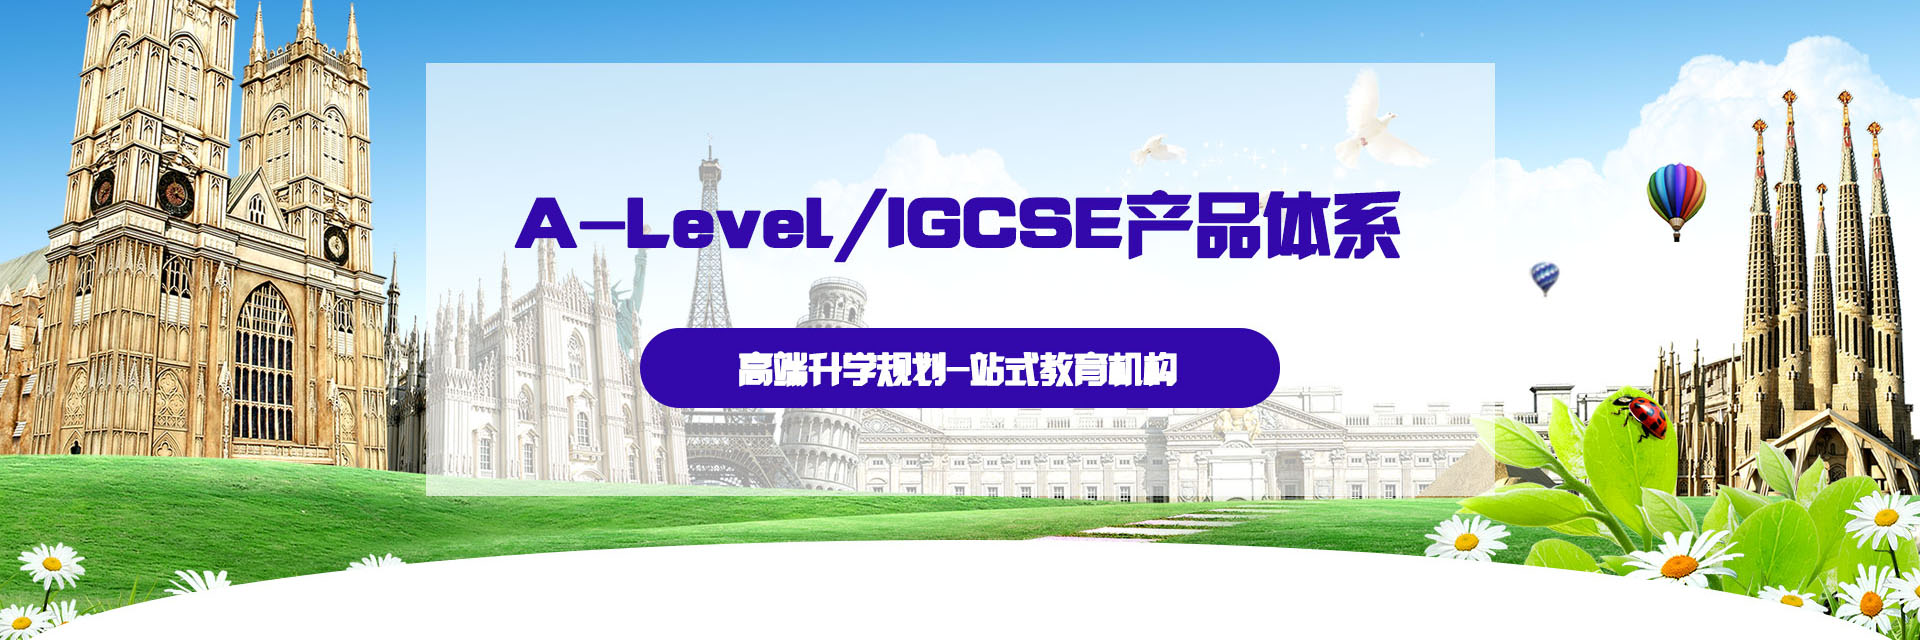 A-Level/IGCSE课程